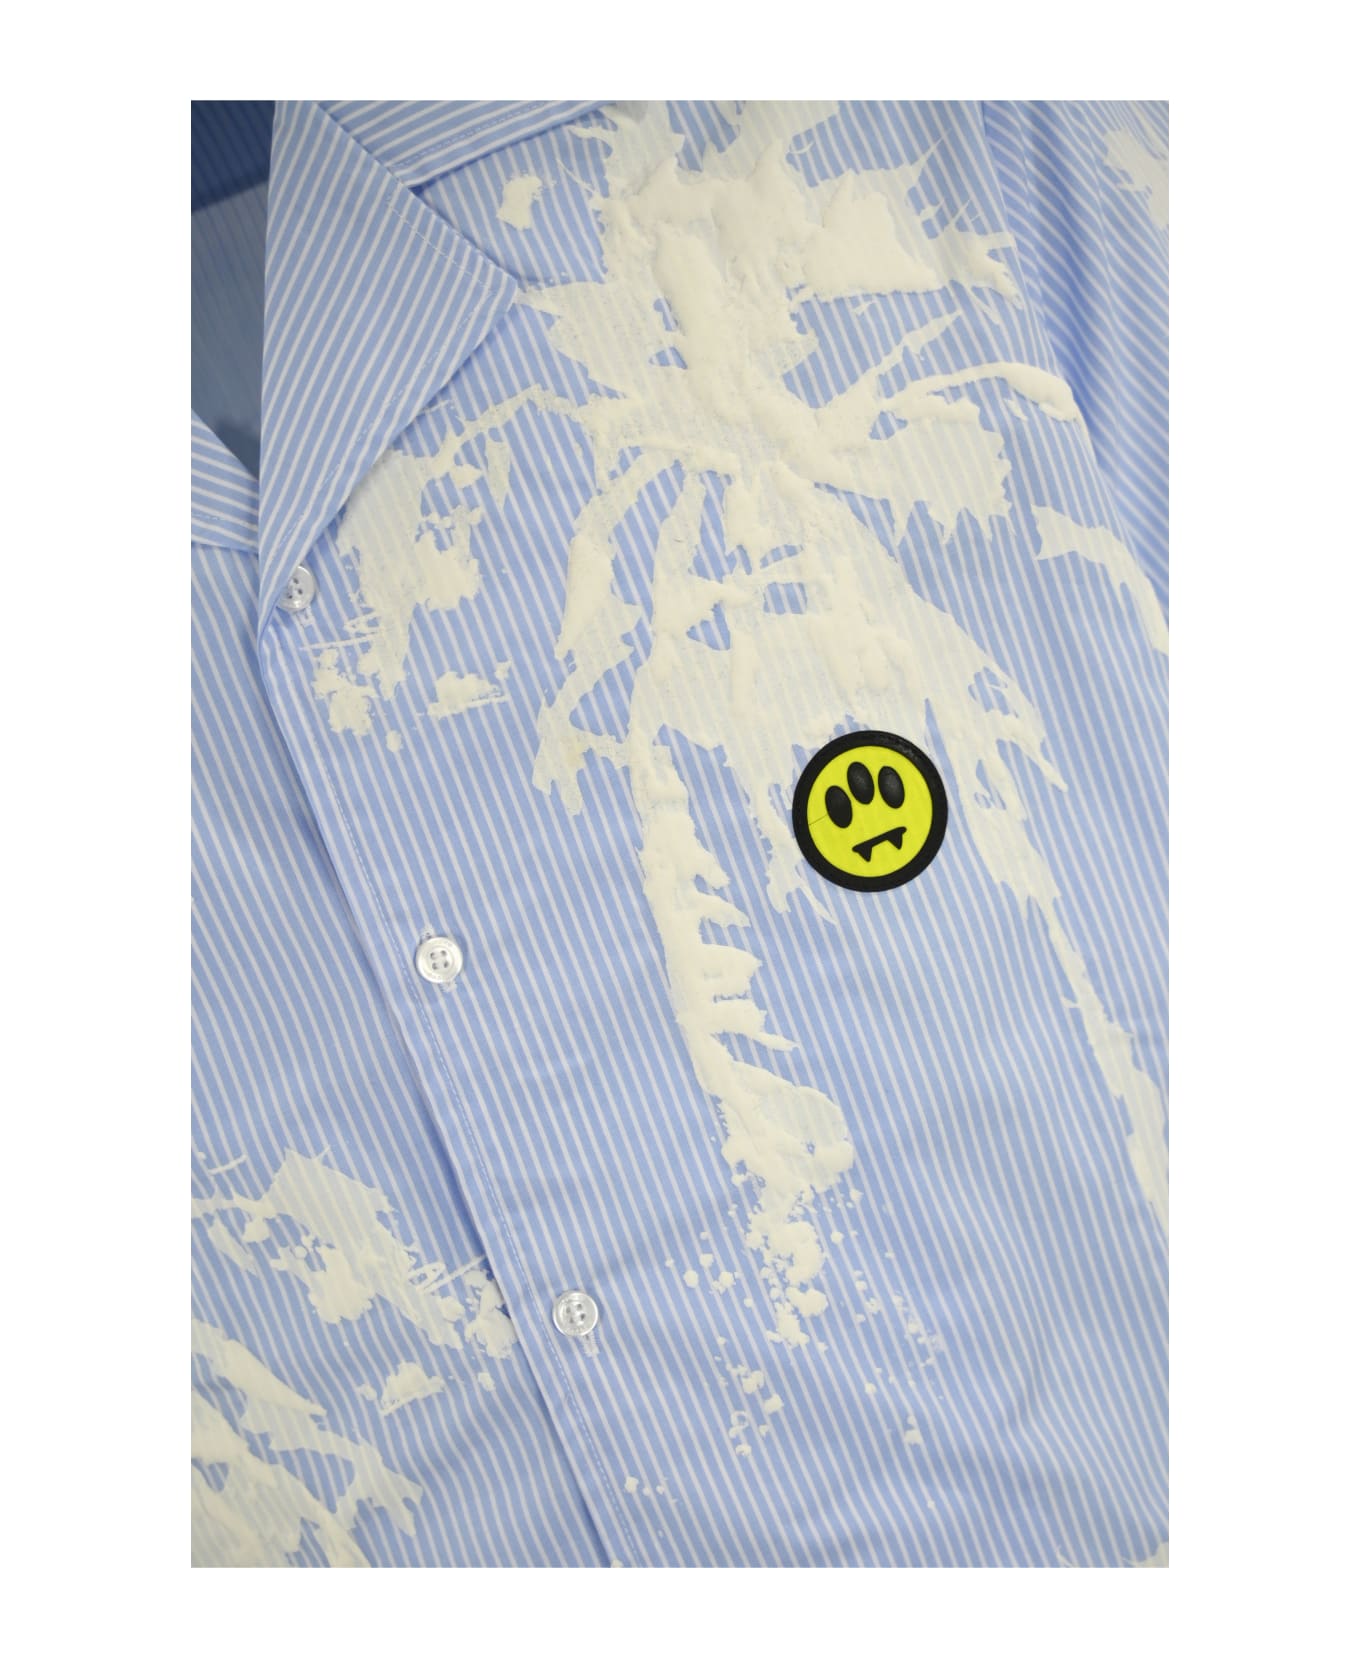 Barrow Camicia In Popeline Con Stampa Palm - CELESTE/LIGHT BLUE シャツ